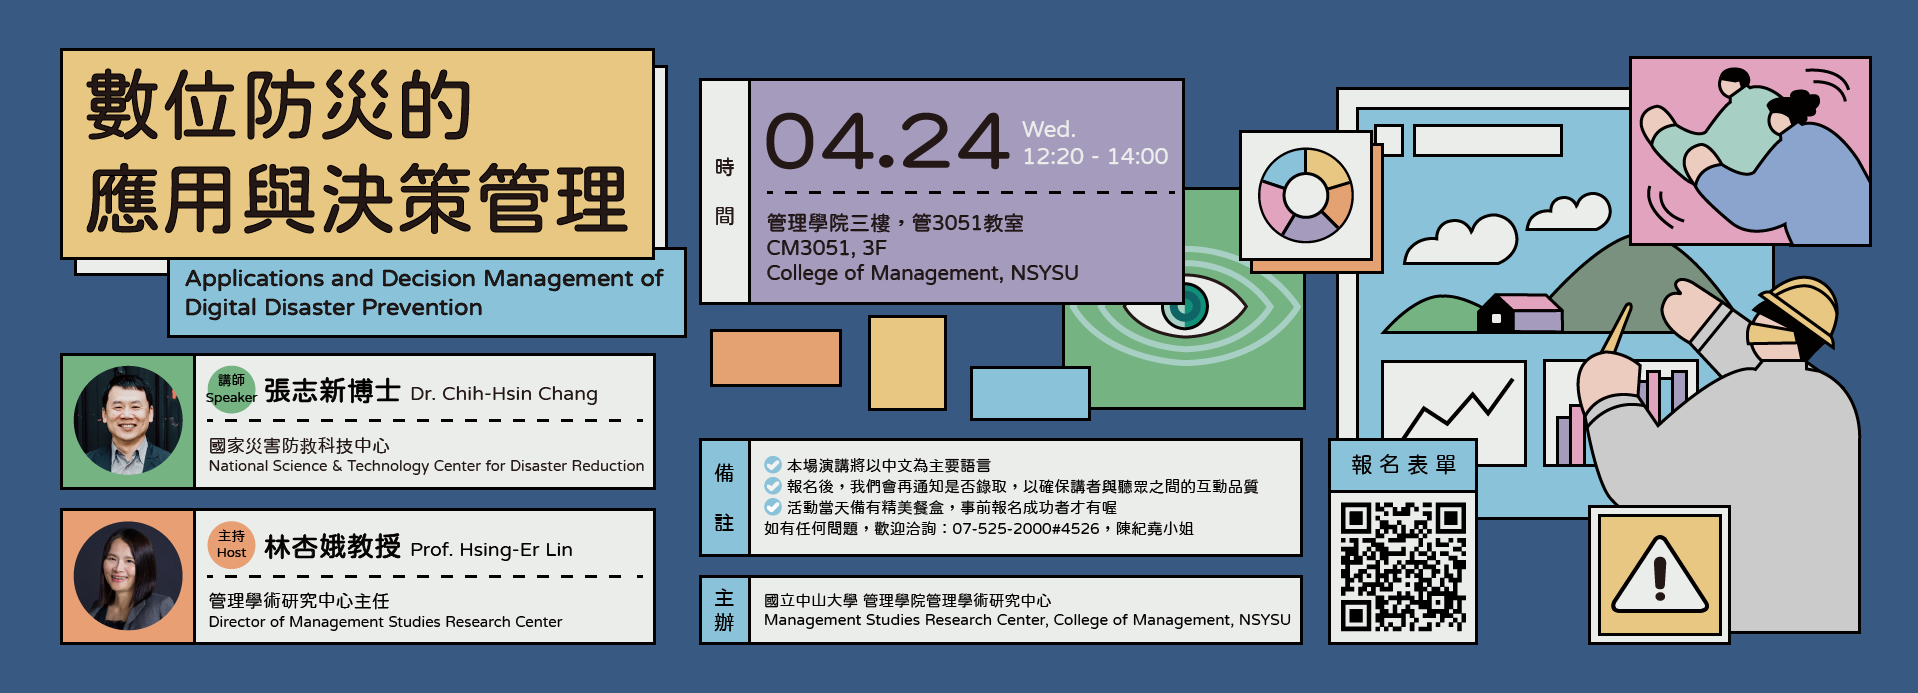 113/04/24(三)【演講】數位防災的應用與決策管理